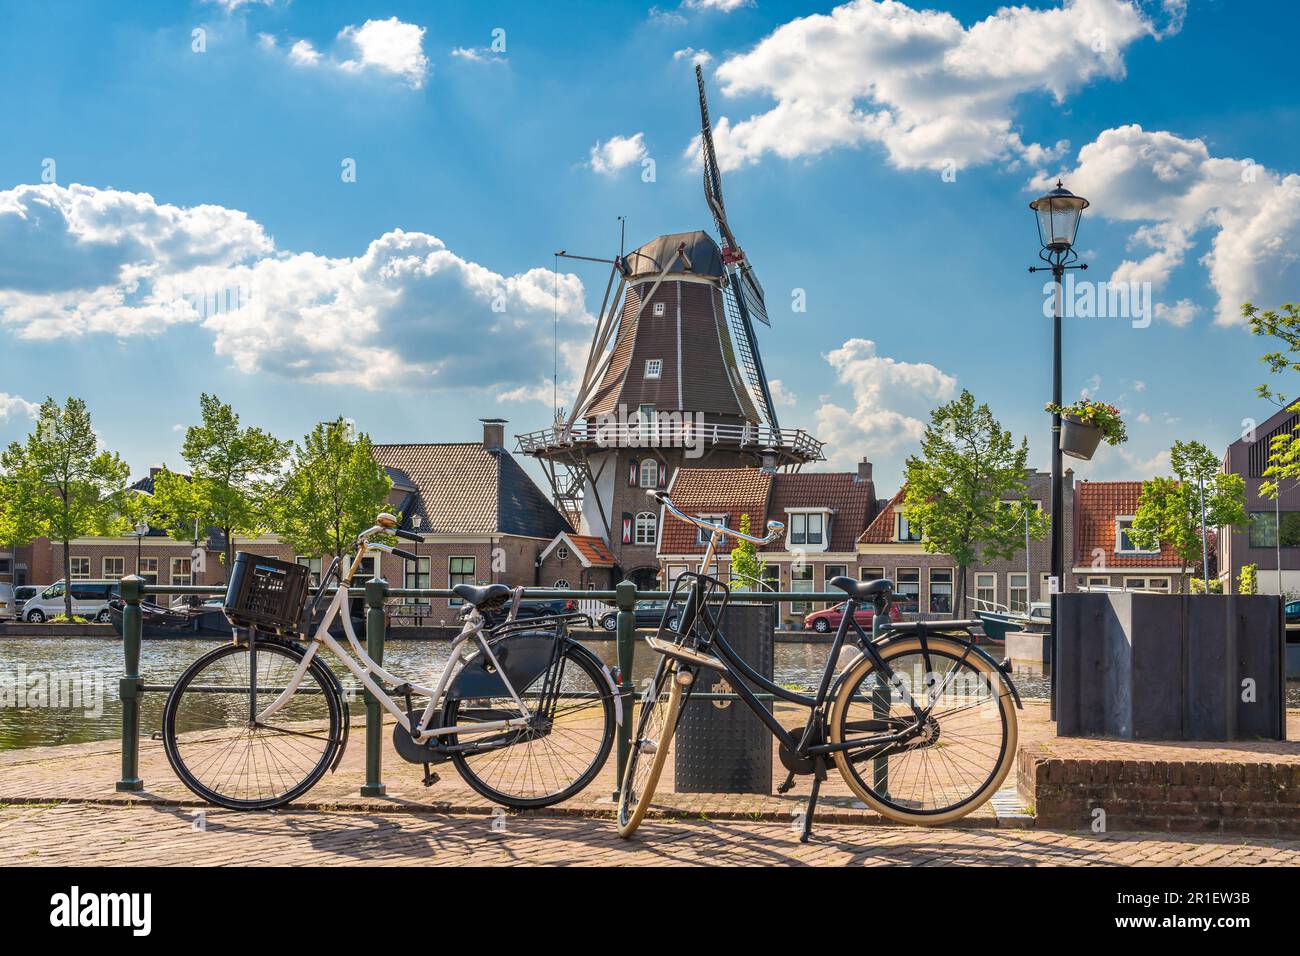 Une scène hollandaise typique avec un moulin à vent traditionnel et des vélos le long du canal dans la ville de Meppel lors d'une journée de printemps ensoleillée Banque D'Images